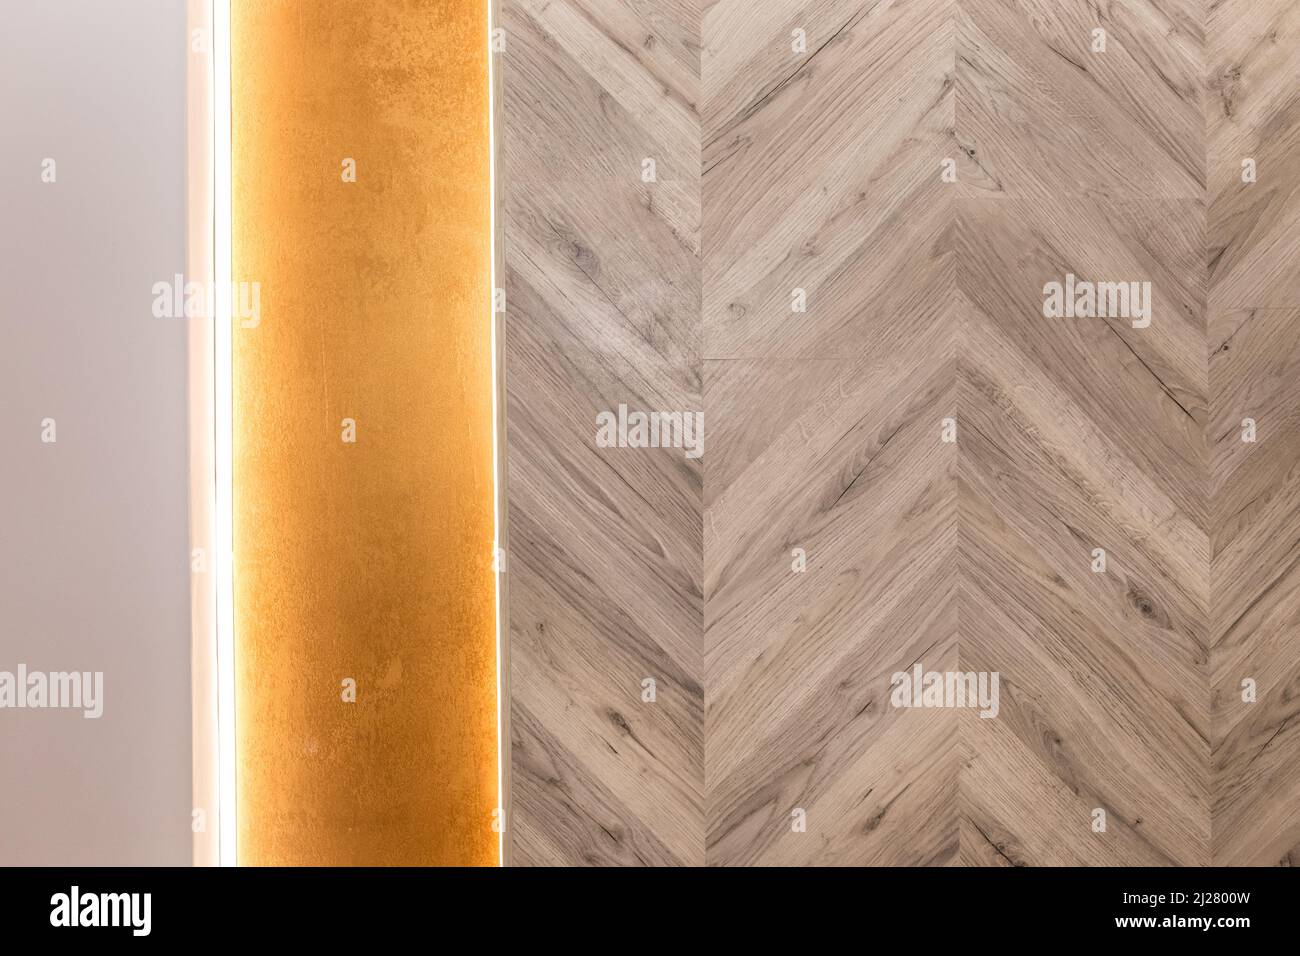 Holzlaminat Abstraktes Deckendesign Moderne Innenarchitektur Hintergrundstruktur mit linearem LED-Licht. Stockfoto